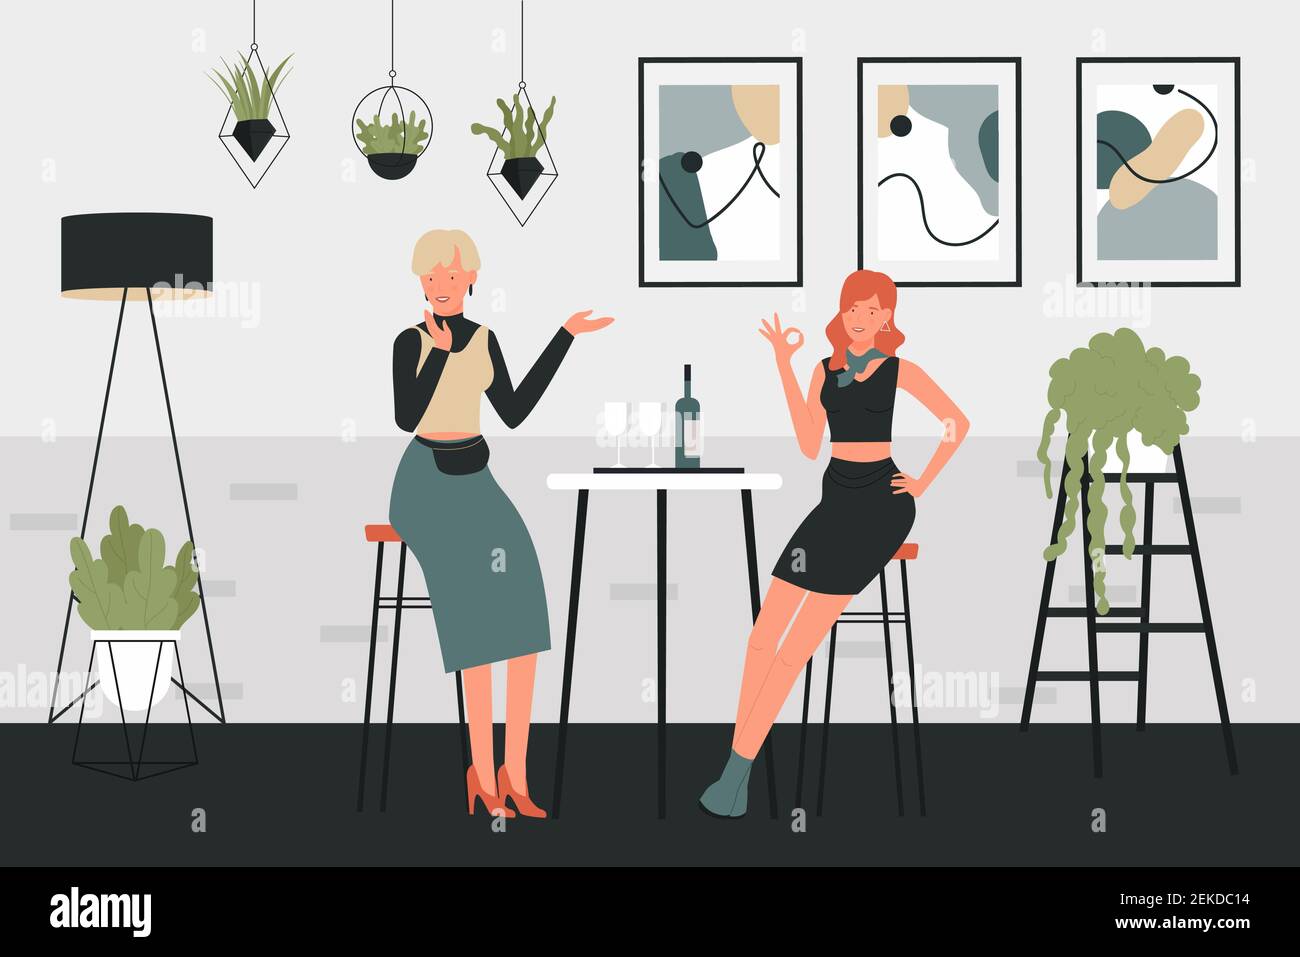 Mädchen trinken Wein Vektor Illustration. Cartoon Frau Figuren sitzen auf hohen Stühlen neben dem Tisch mit Gläsern Wein Getränk und Flasche in komfortablen Innenraum des Hauses oder Café-Bar Hintergrund Stock Vektor